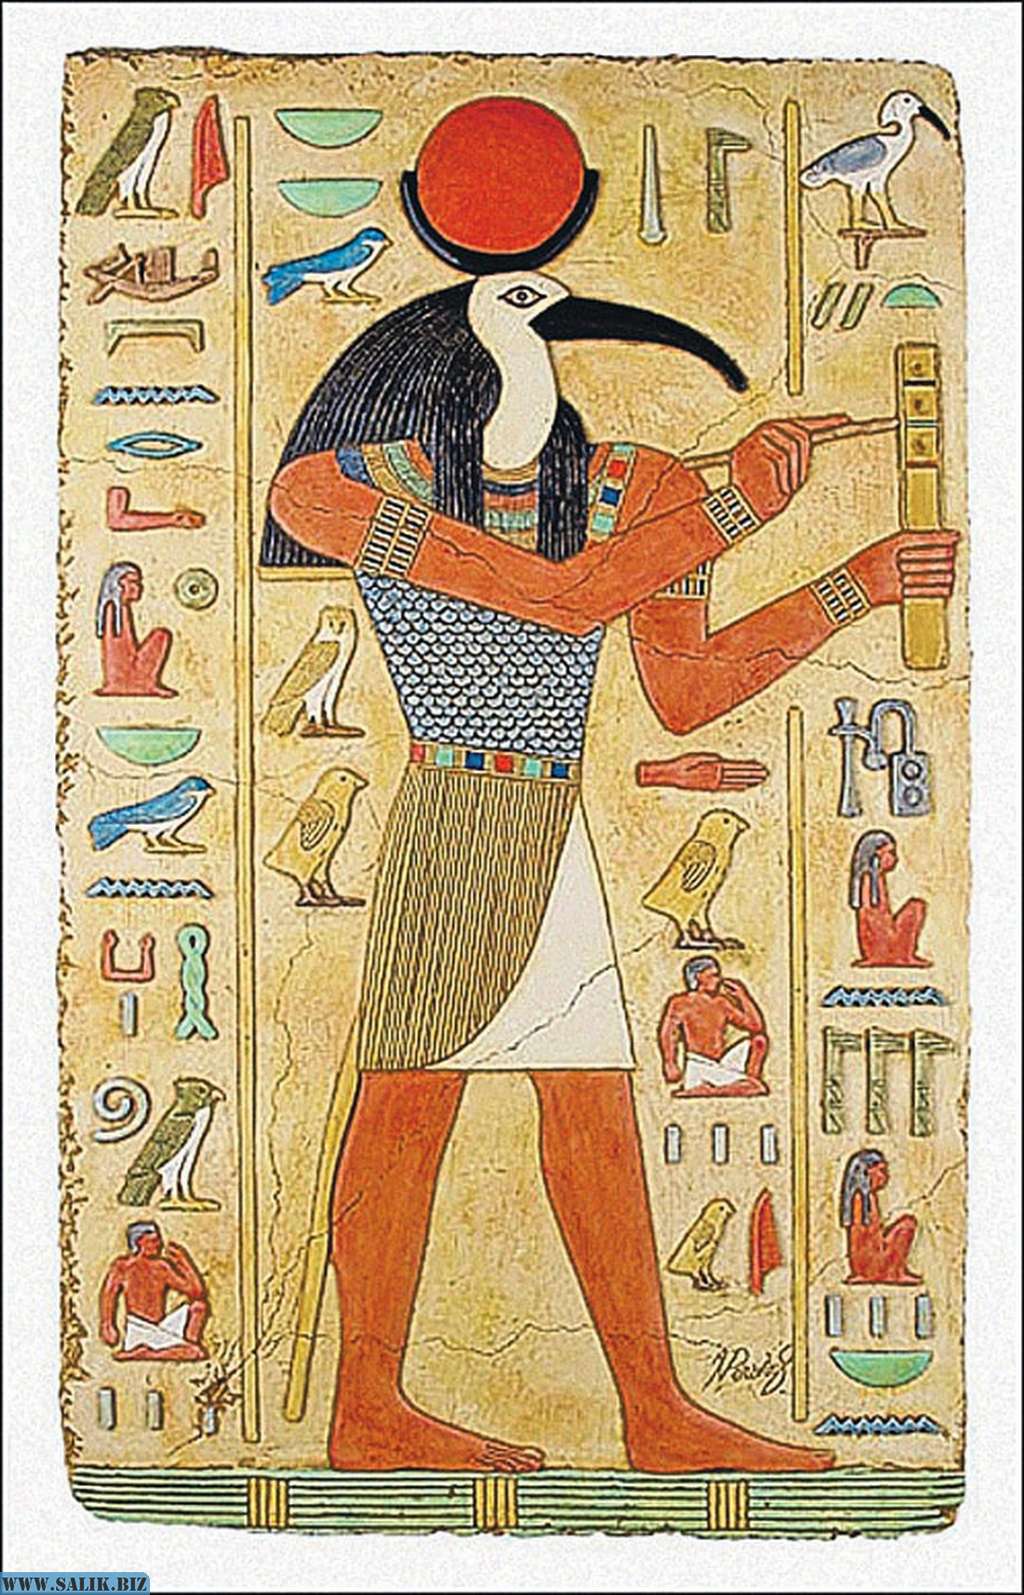 Богом древнего египта был. Бог тот в древнем Египте. Ибис Бог Египта. Бог в древнем Египте с головой Ибиса. Бог Египта с головой птицы Ибис.